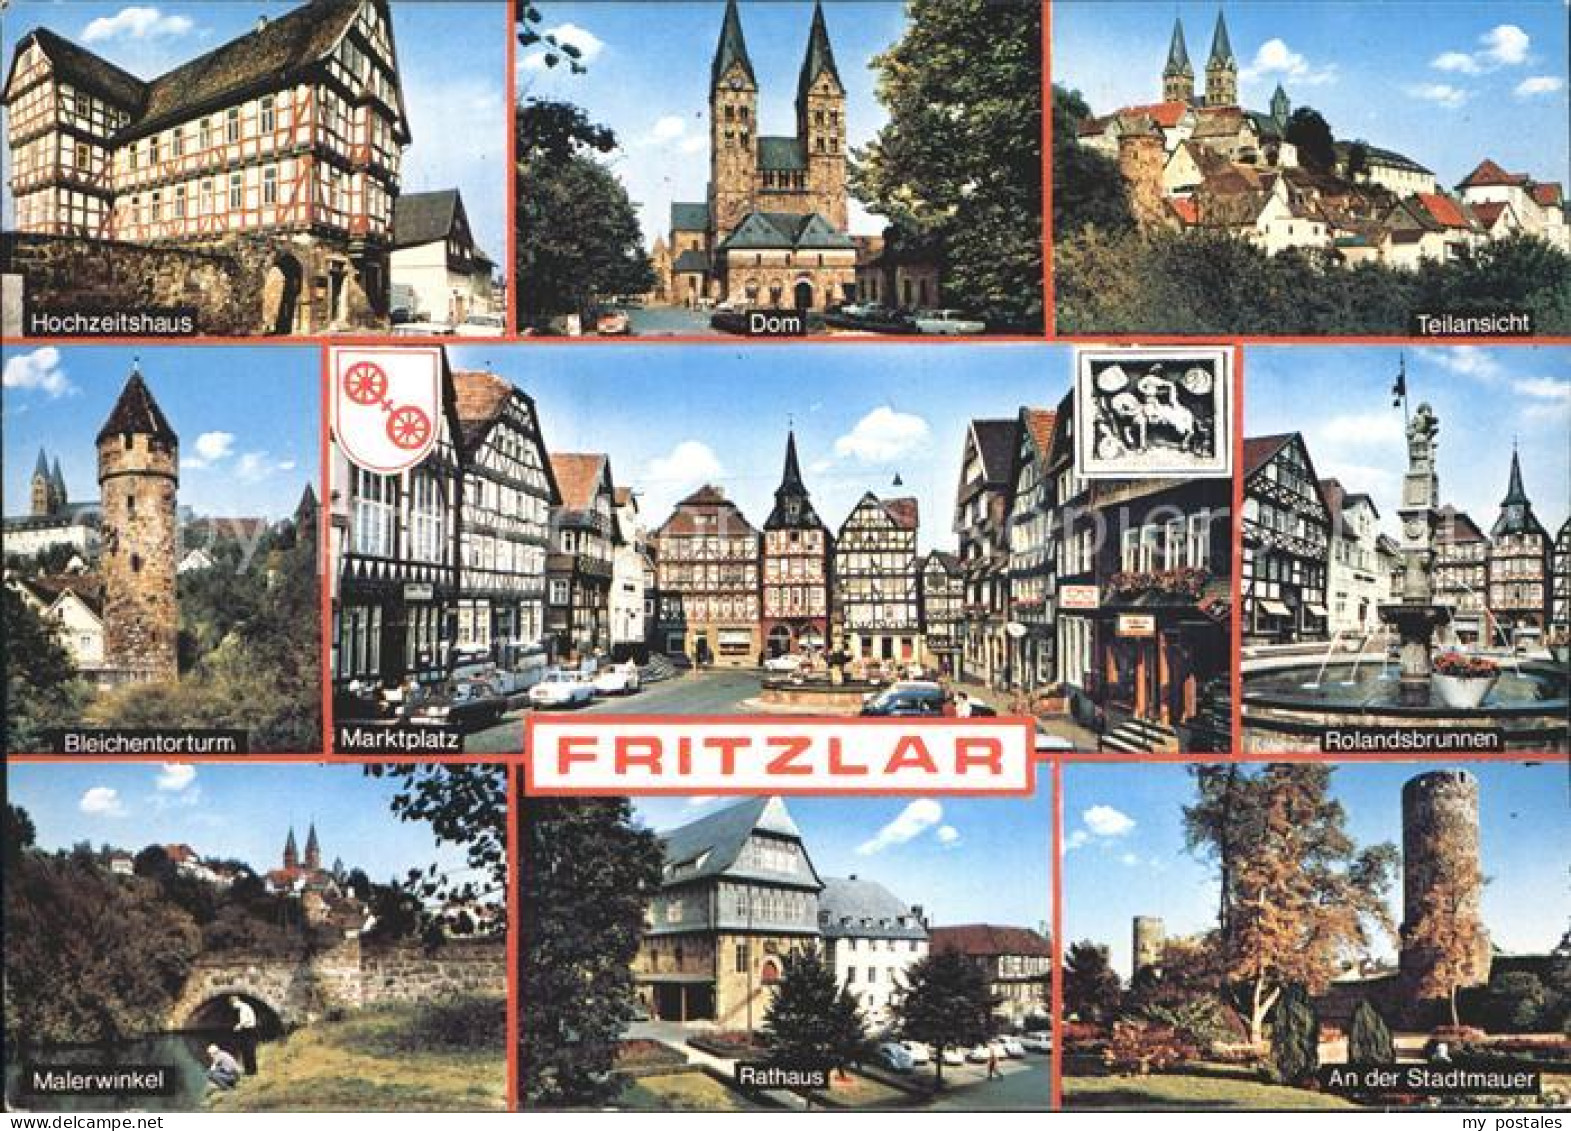 72232895 Fritzlar Dom Hochzeithaus Bleichentorturm Rolandsbrunnen Fritzlar - Fritzlar